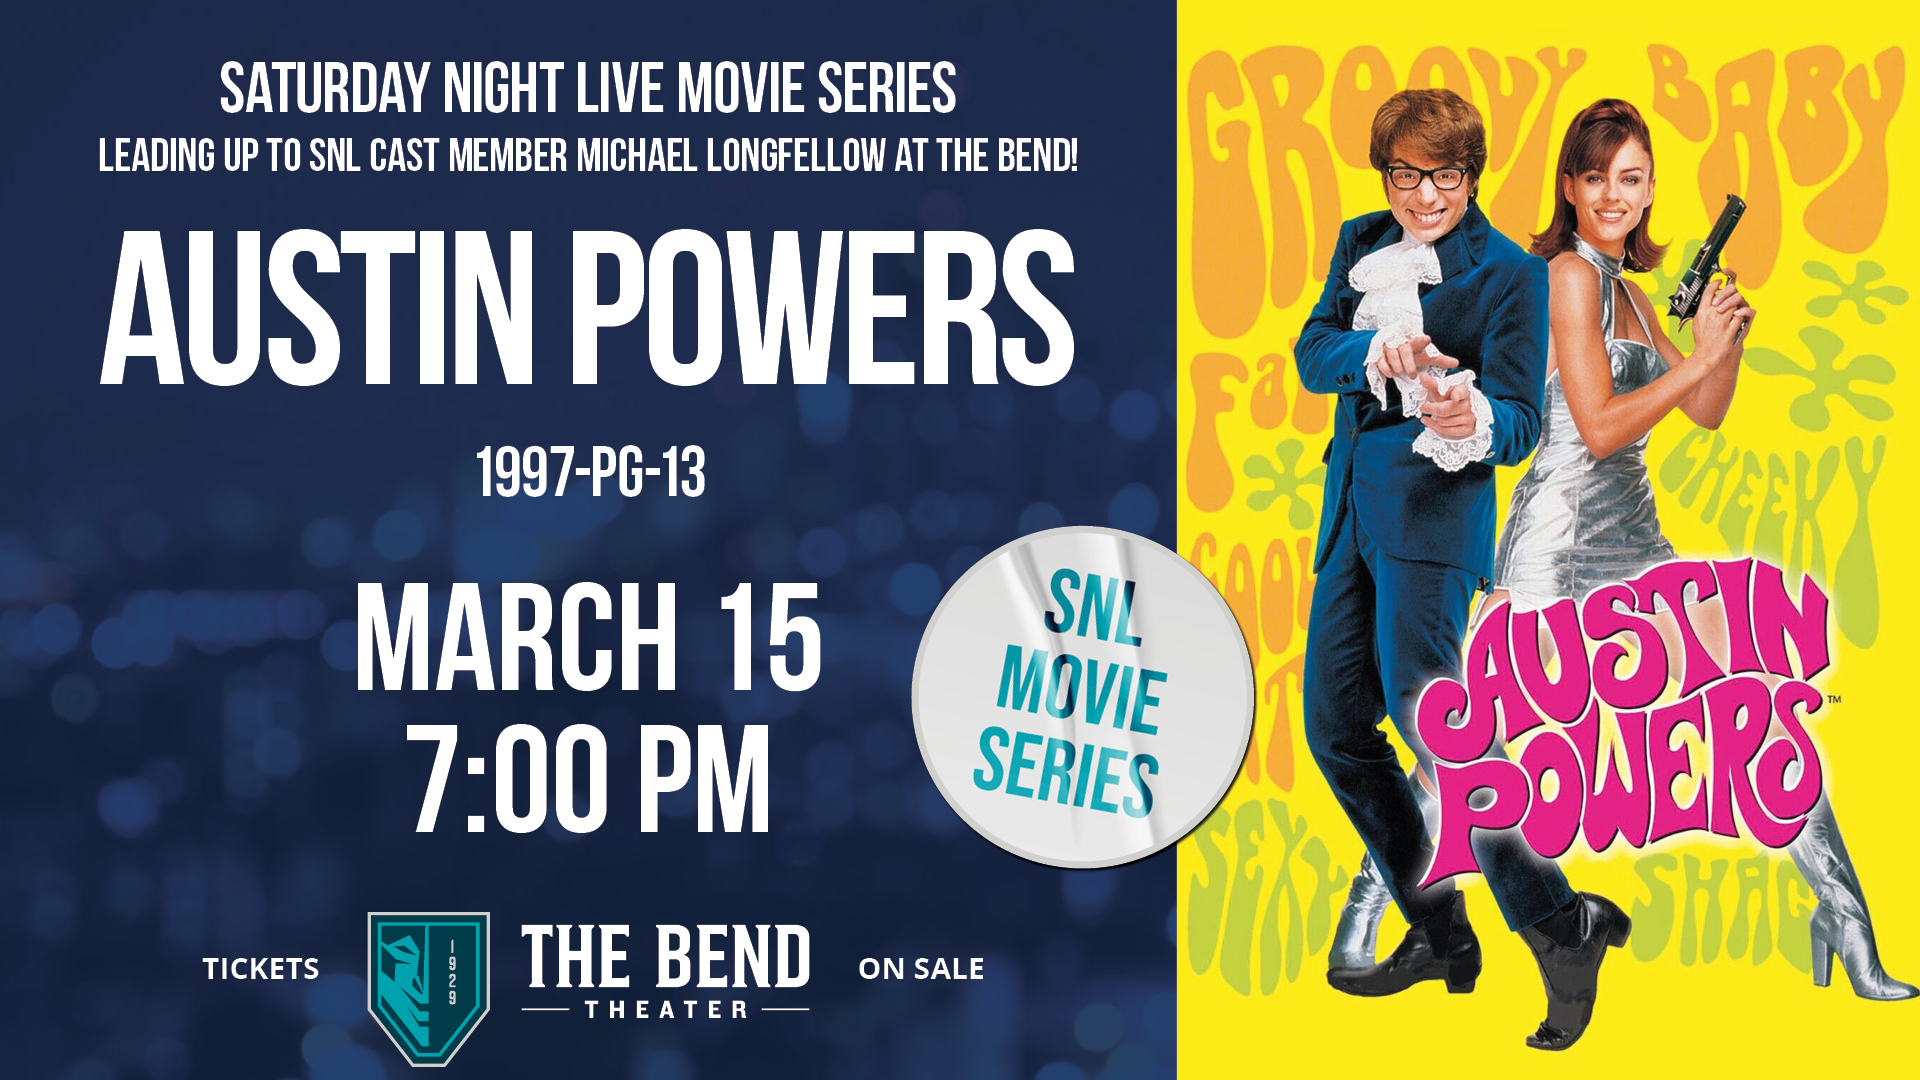 Saturday Night Live Movie Series Austin Powers